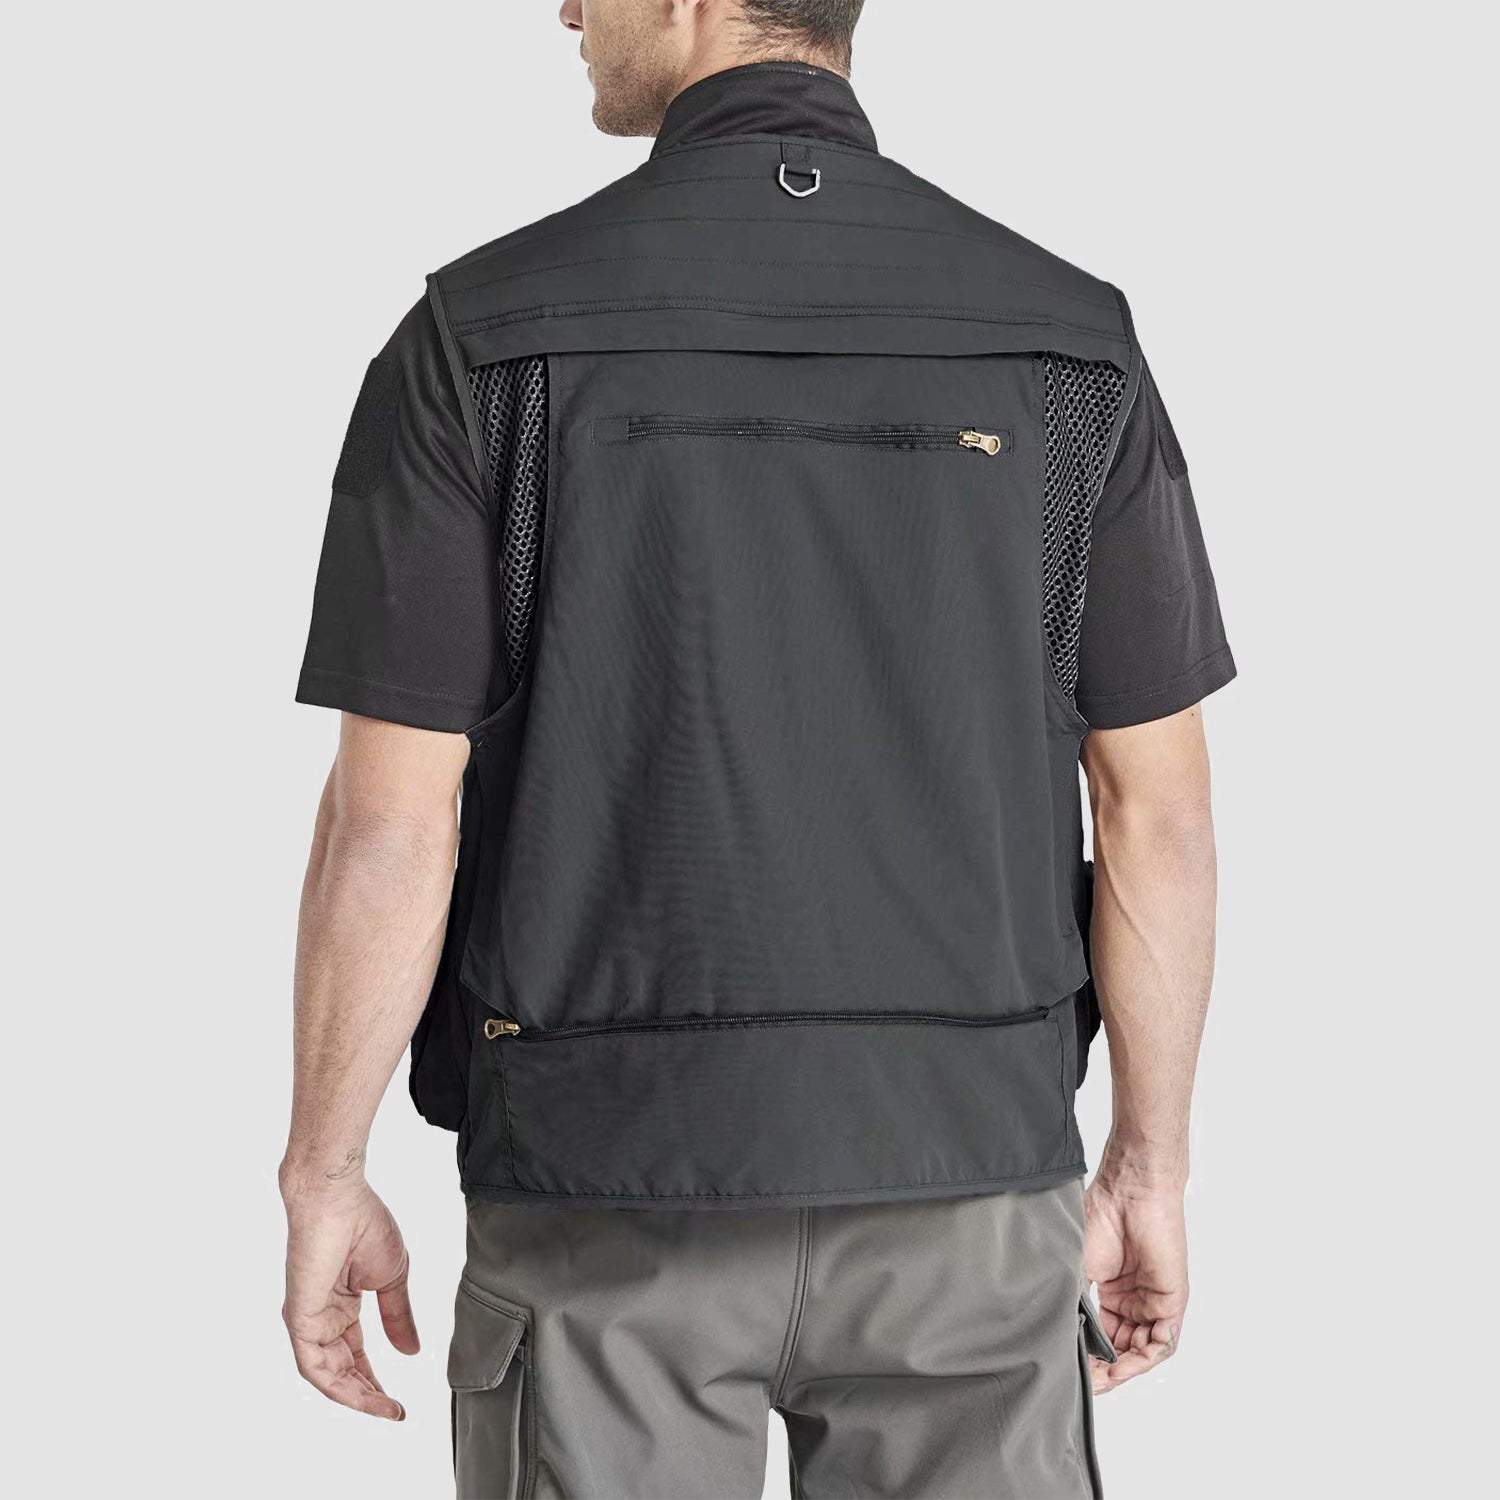 Men's Outerwear Vests, Mesh Outdoor Work Vest